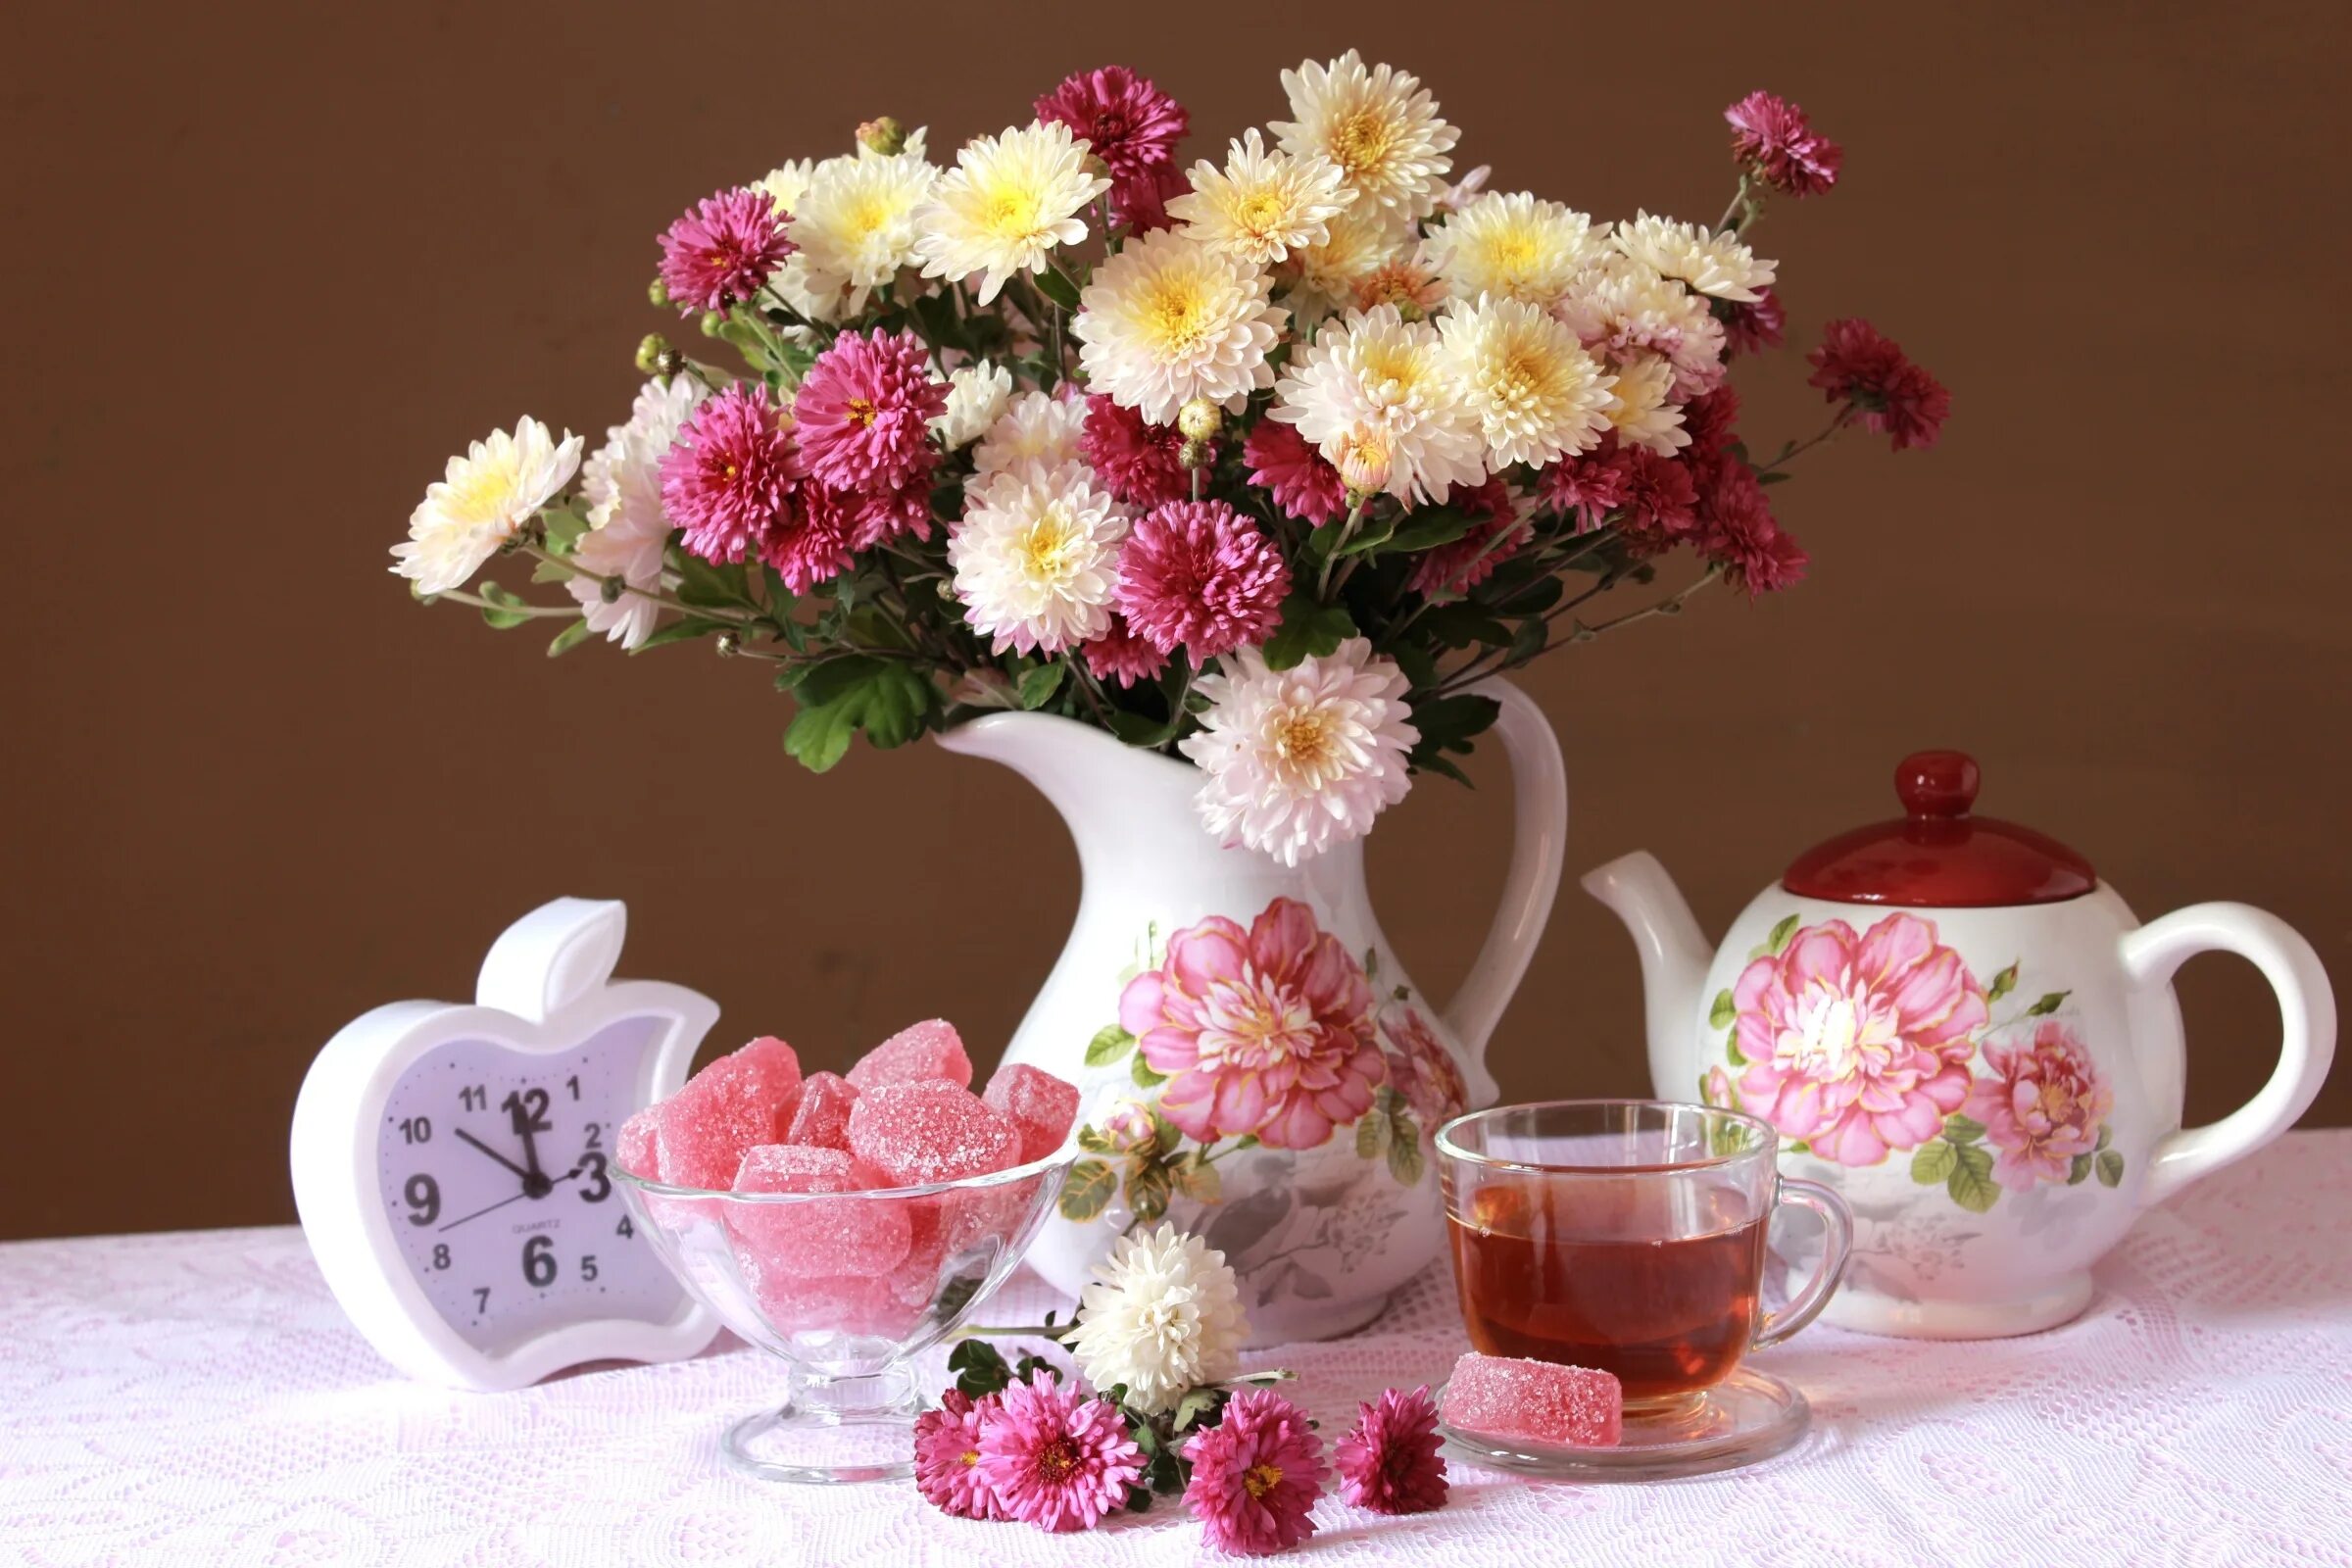 Картинка с цветами доброе утро хорошего дня. Летние цветы в вазе. Утренний букет. Красивые цветы в чашке. Прекрасный утренний букет.